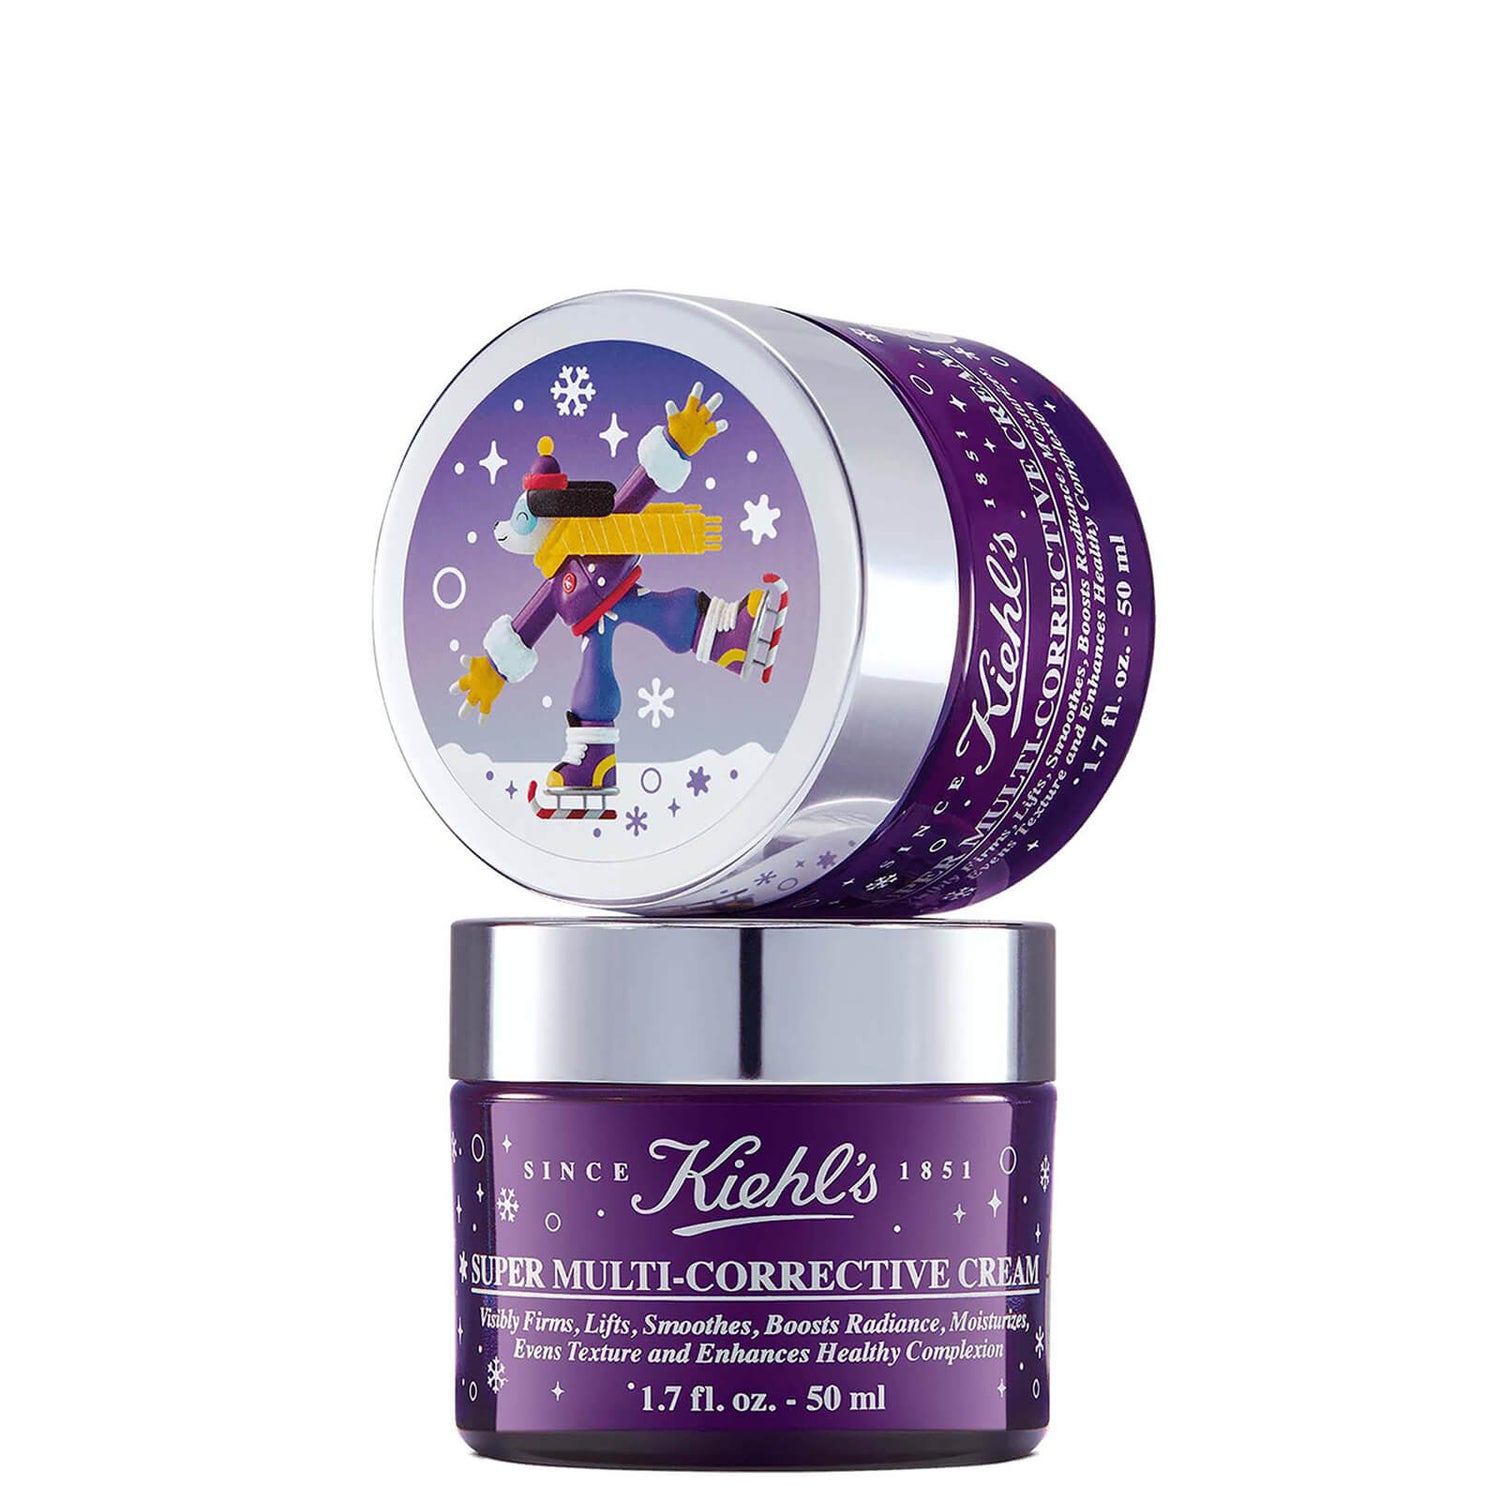 Kiehl's Super Multi-Corrective Cream Limtied Edition 50ml